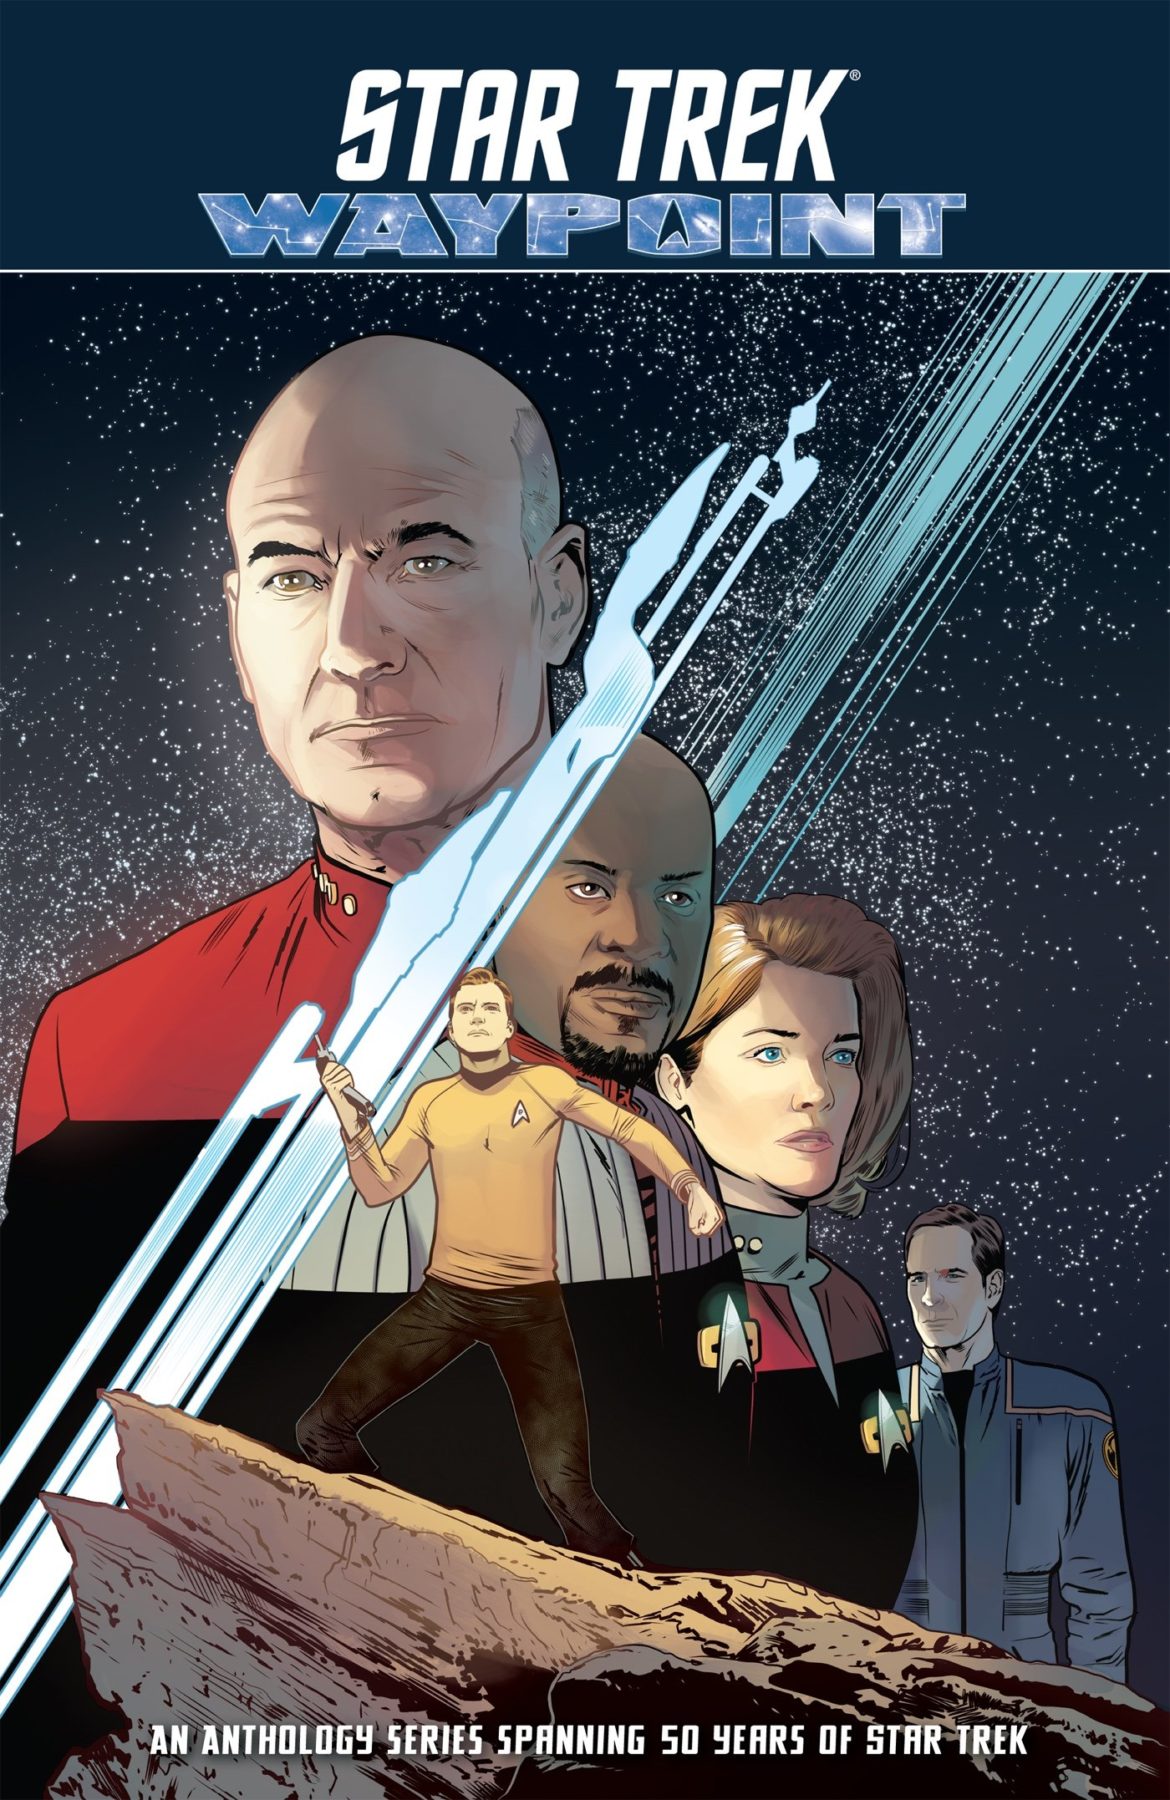 Sube el volumen uno de la serie de antologías Star Trek: Waypoint de IDW